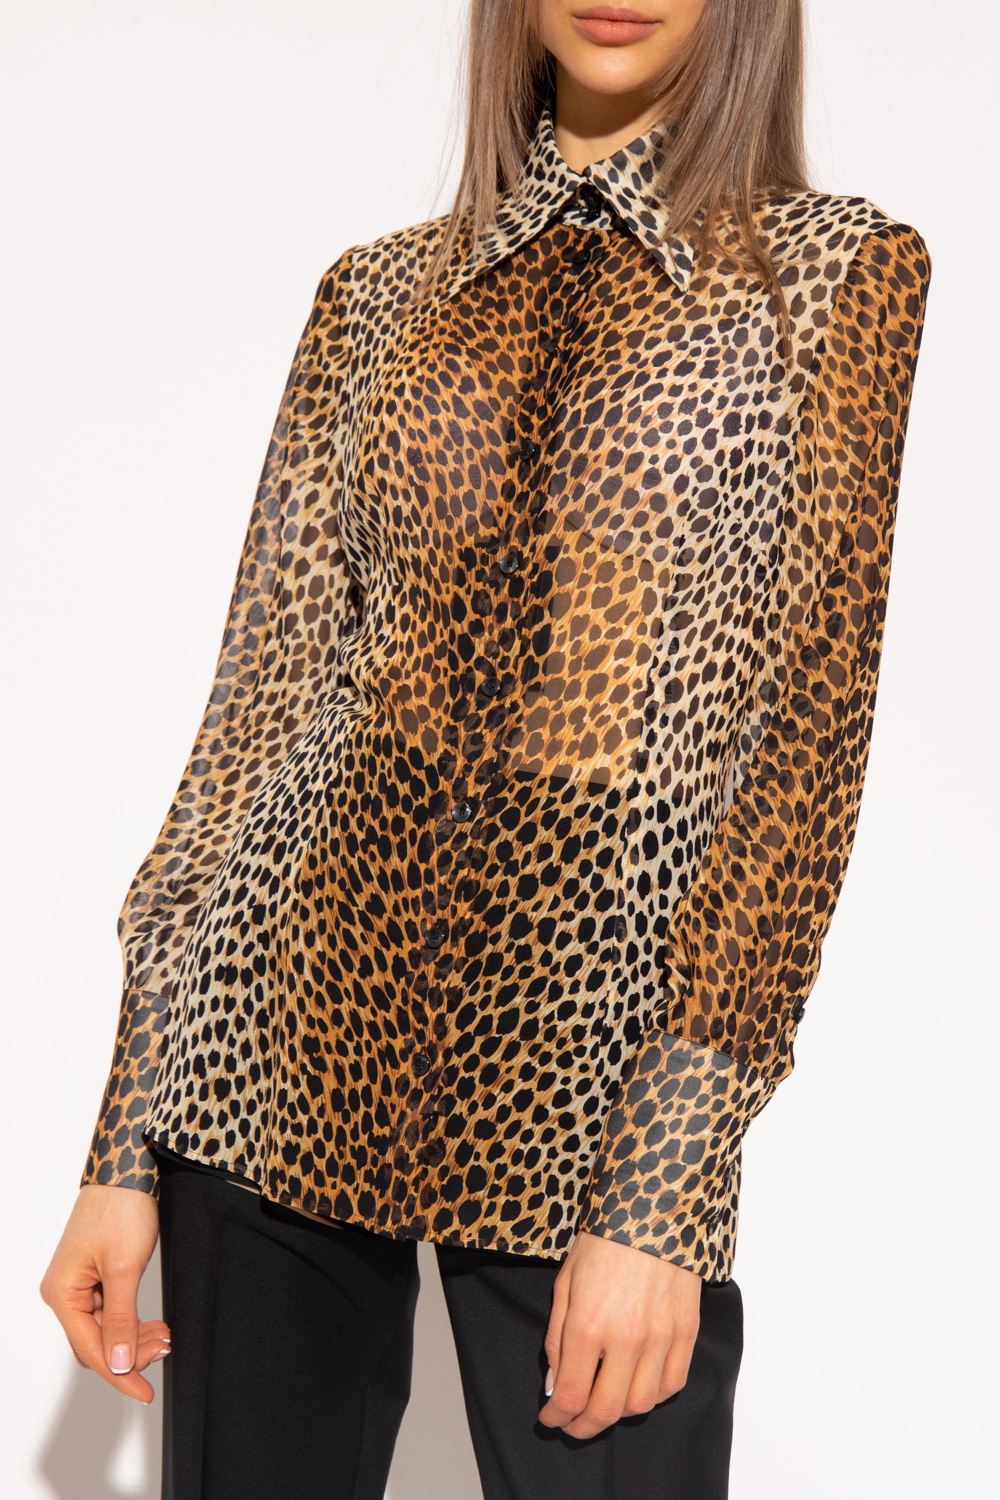 leopard printed shirt dolce gabbana shirt fsadd Silk shirt with animal motif